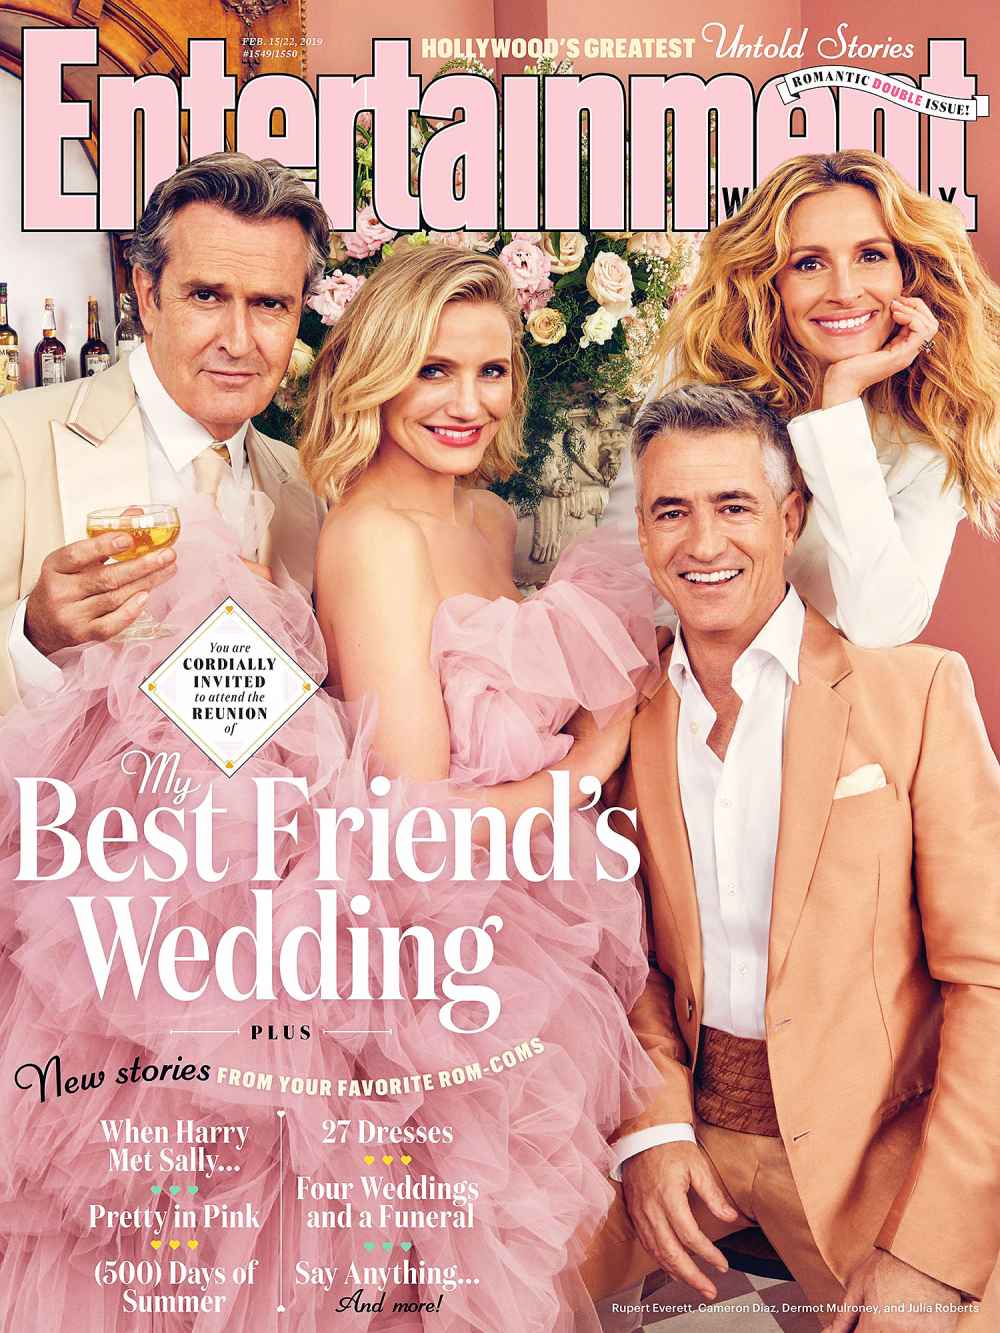 Rupert Everett Cameron Diaz Dermot Mulroney Julia Roberts My Best Friend's Wedding Reunion Entertainment Weekly Cover